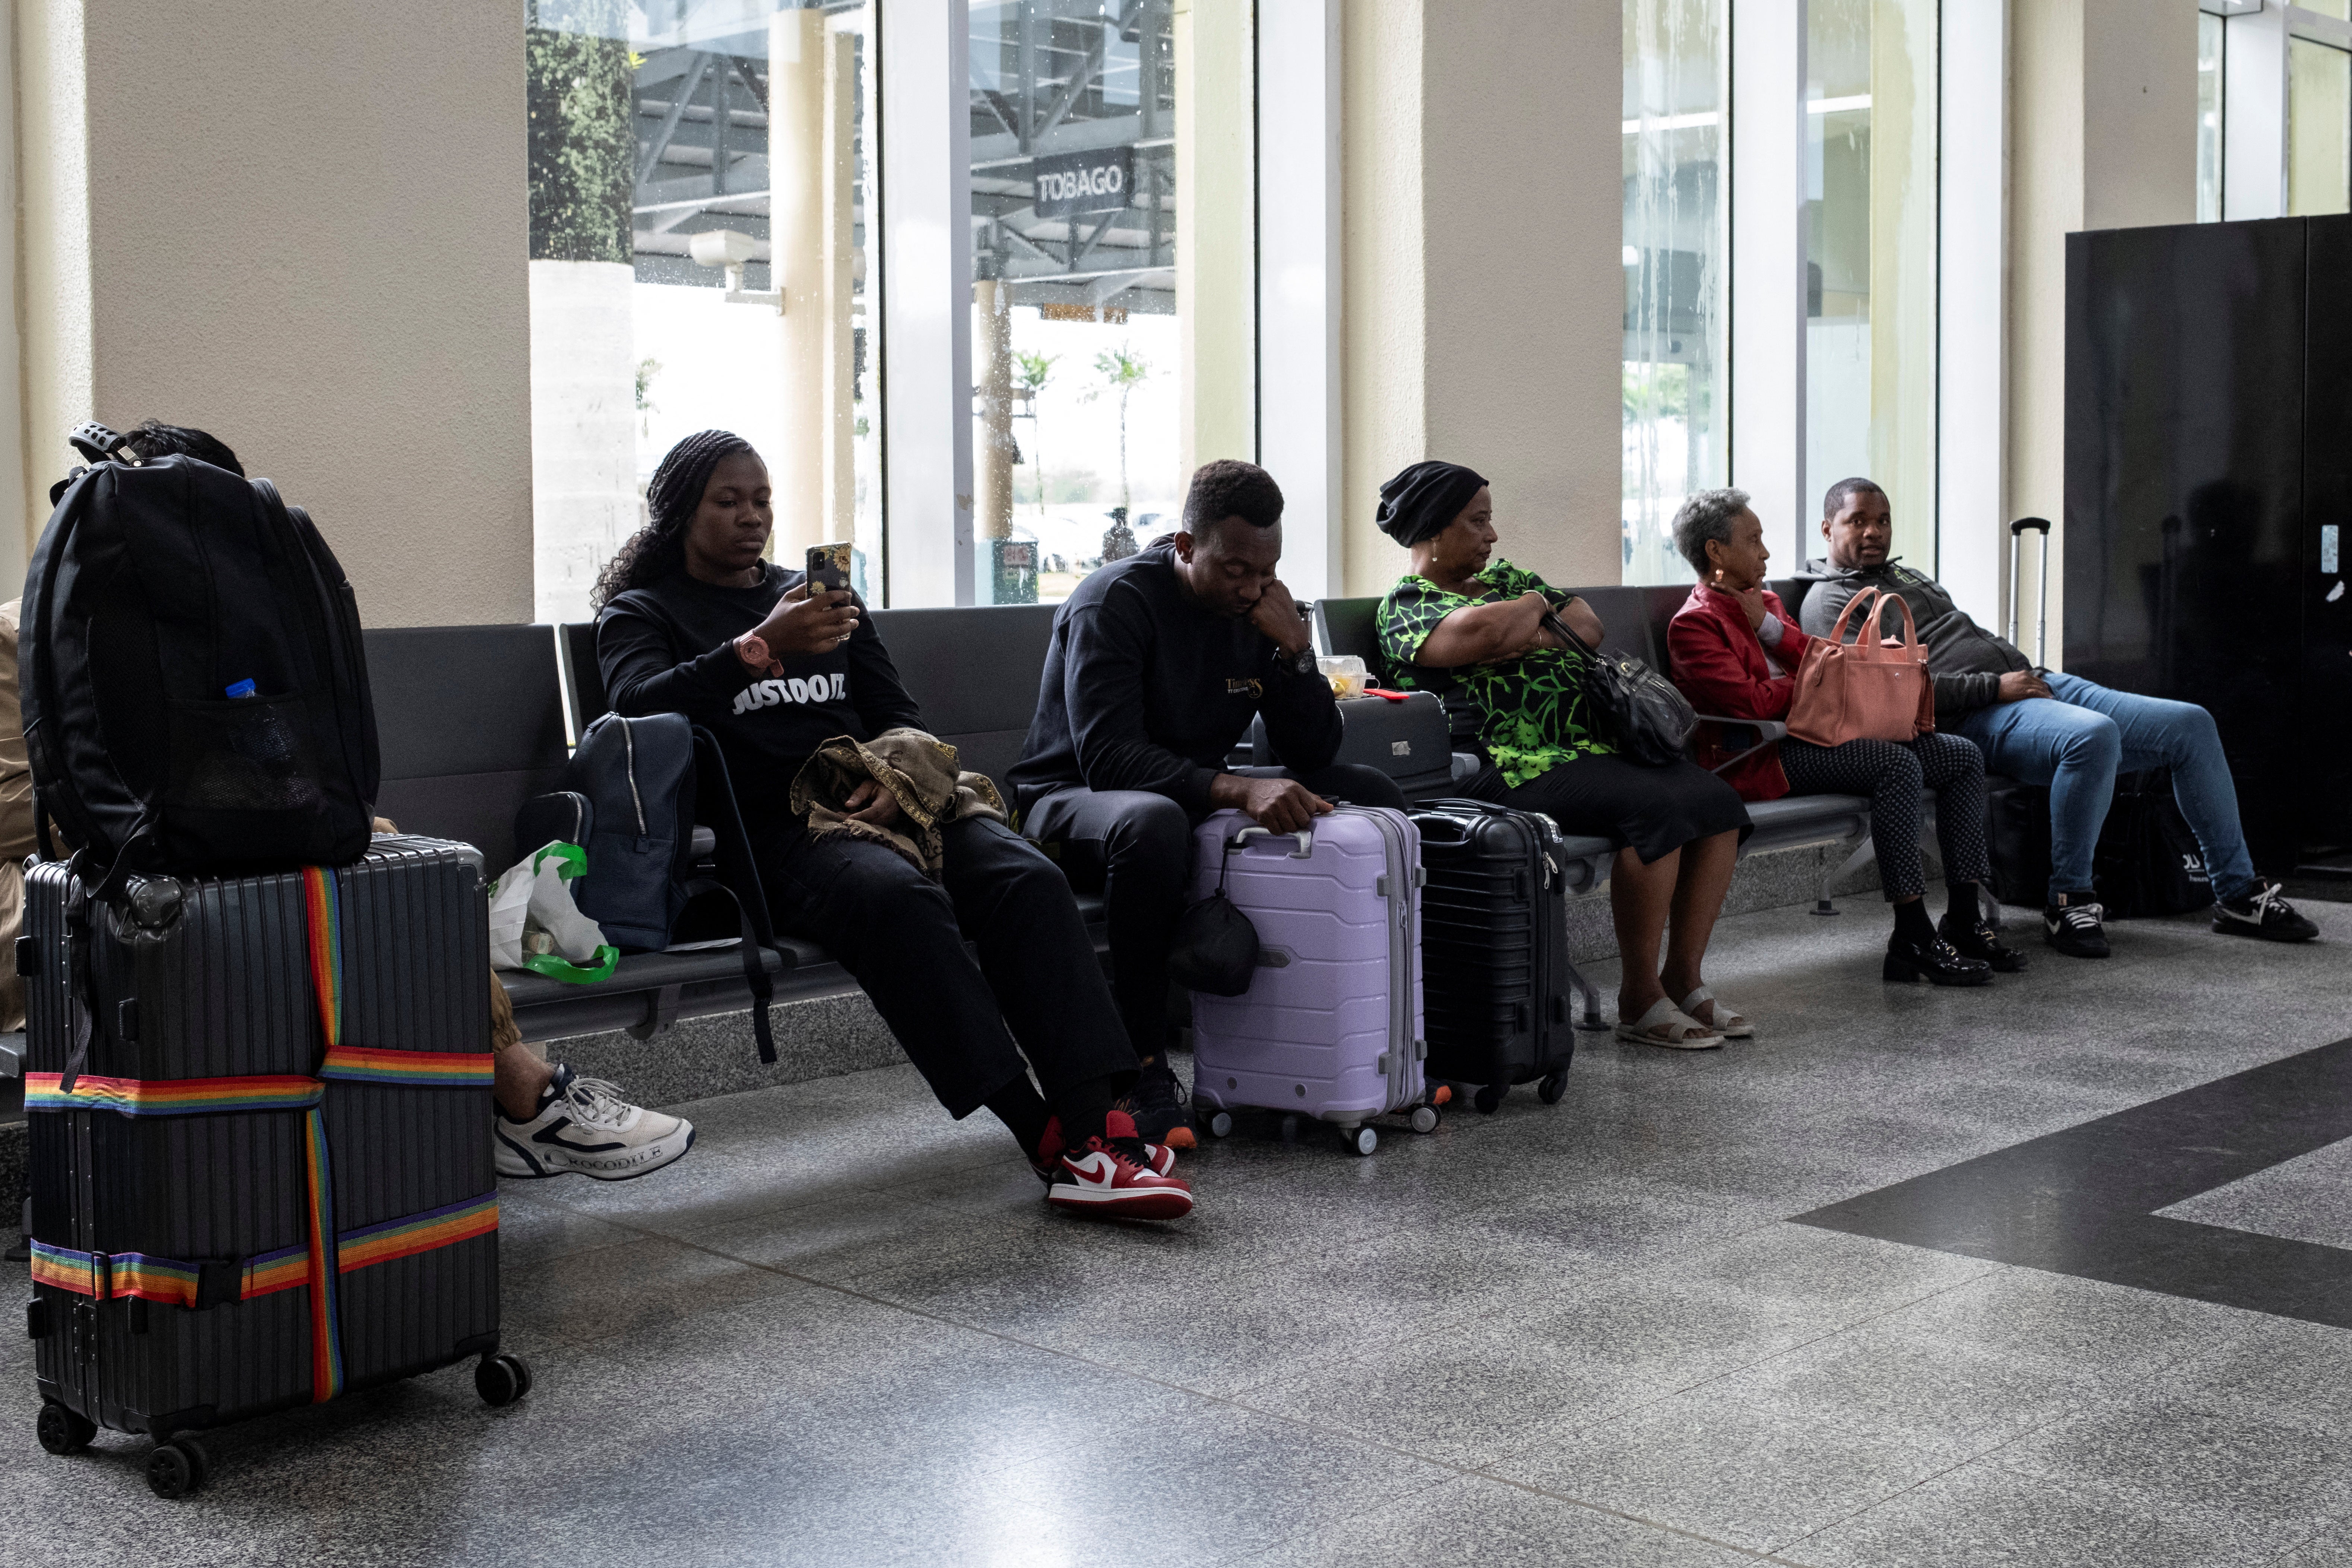 Podróżni czekają na lotnisku międzynarodowym w Piarco, ponieważ loty są opóźnione i odwołane z powodu huraganu Beryl